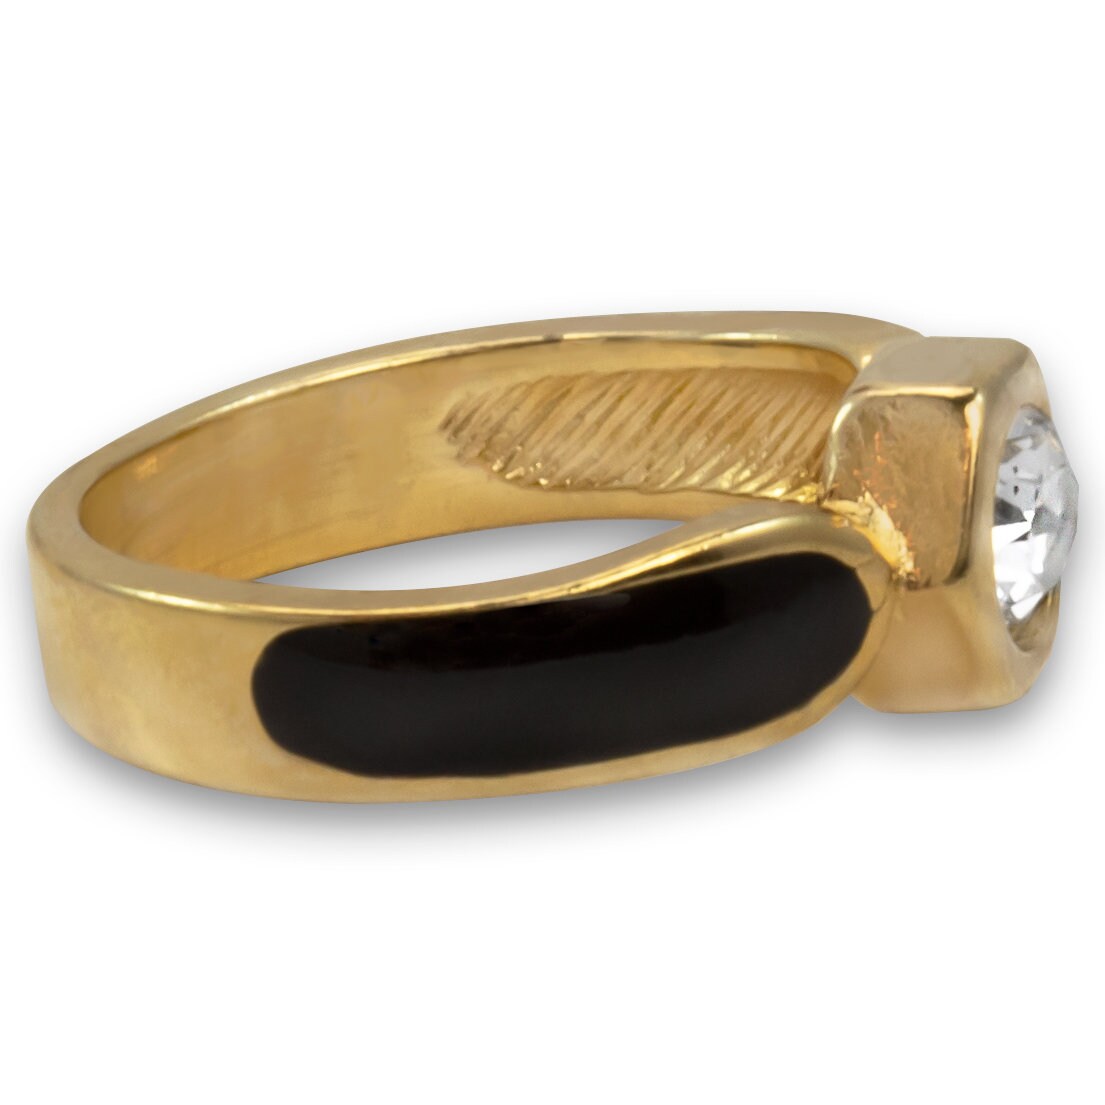 Vintage Ring 1980s Black Enamel Ring with Clear Swarovski Crystals Leaf Motif Antique 18k Gold Plated #R6000 Size 5